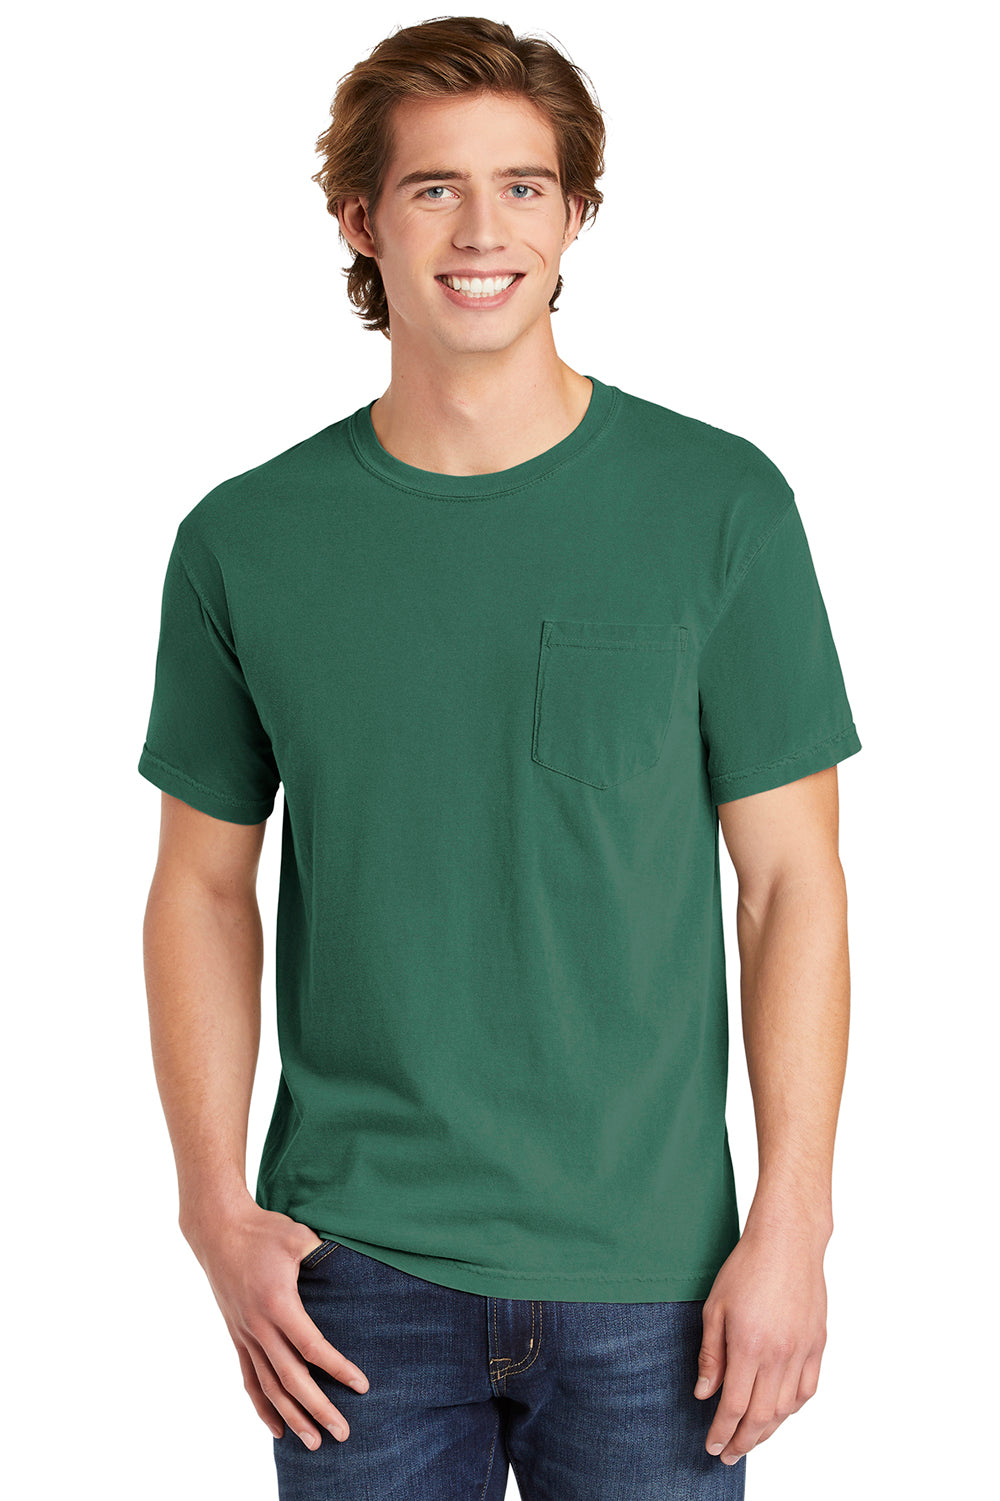 Comfort Colors 6030/6030CC Mens Short Sleeve Crewneck T-Shirt w/ Pocket Light Green Front